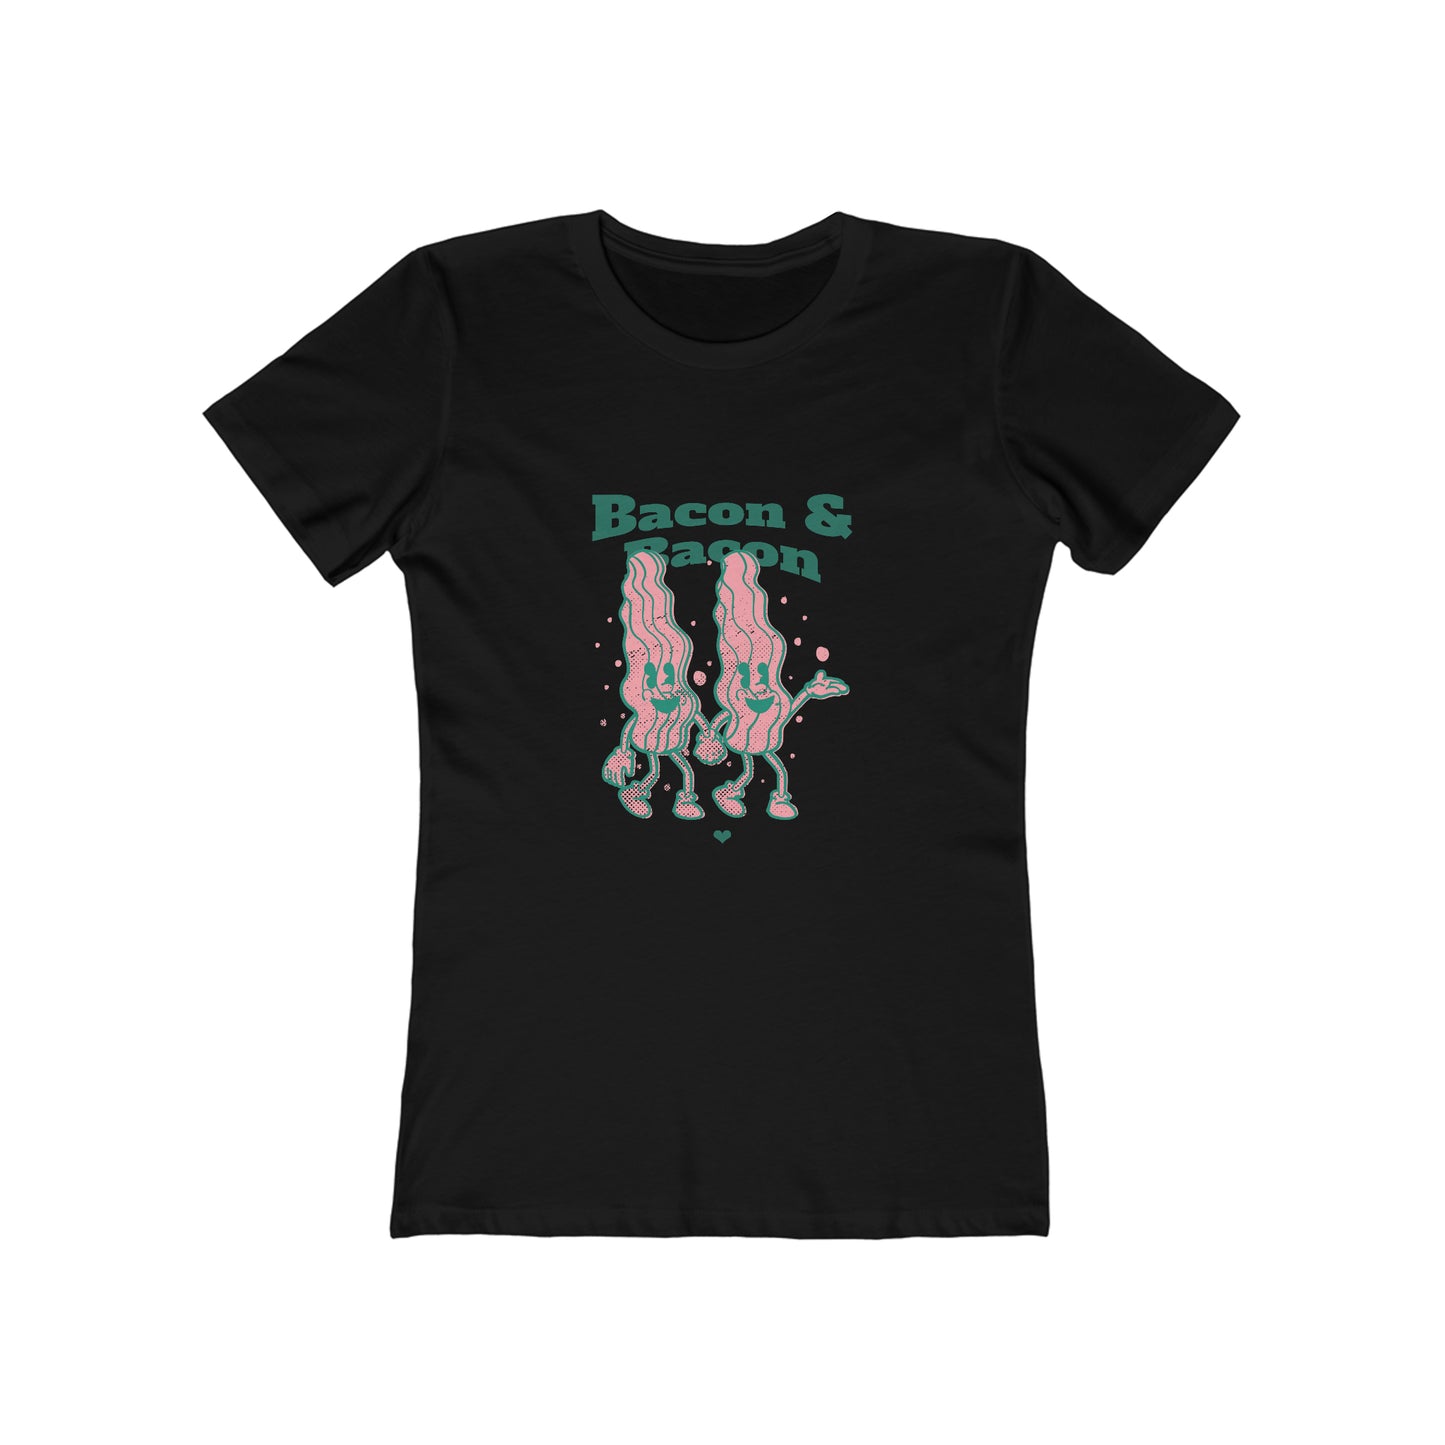 Bacon & Bacon - Women's T-shirt